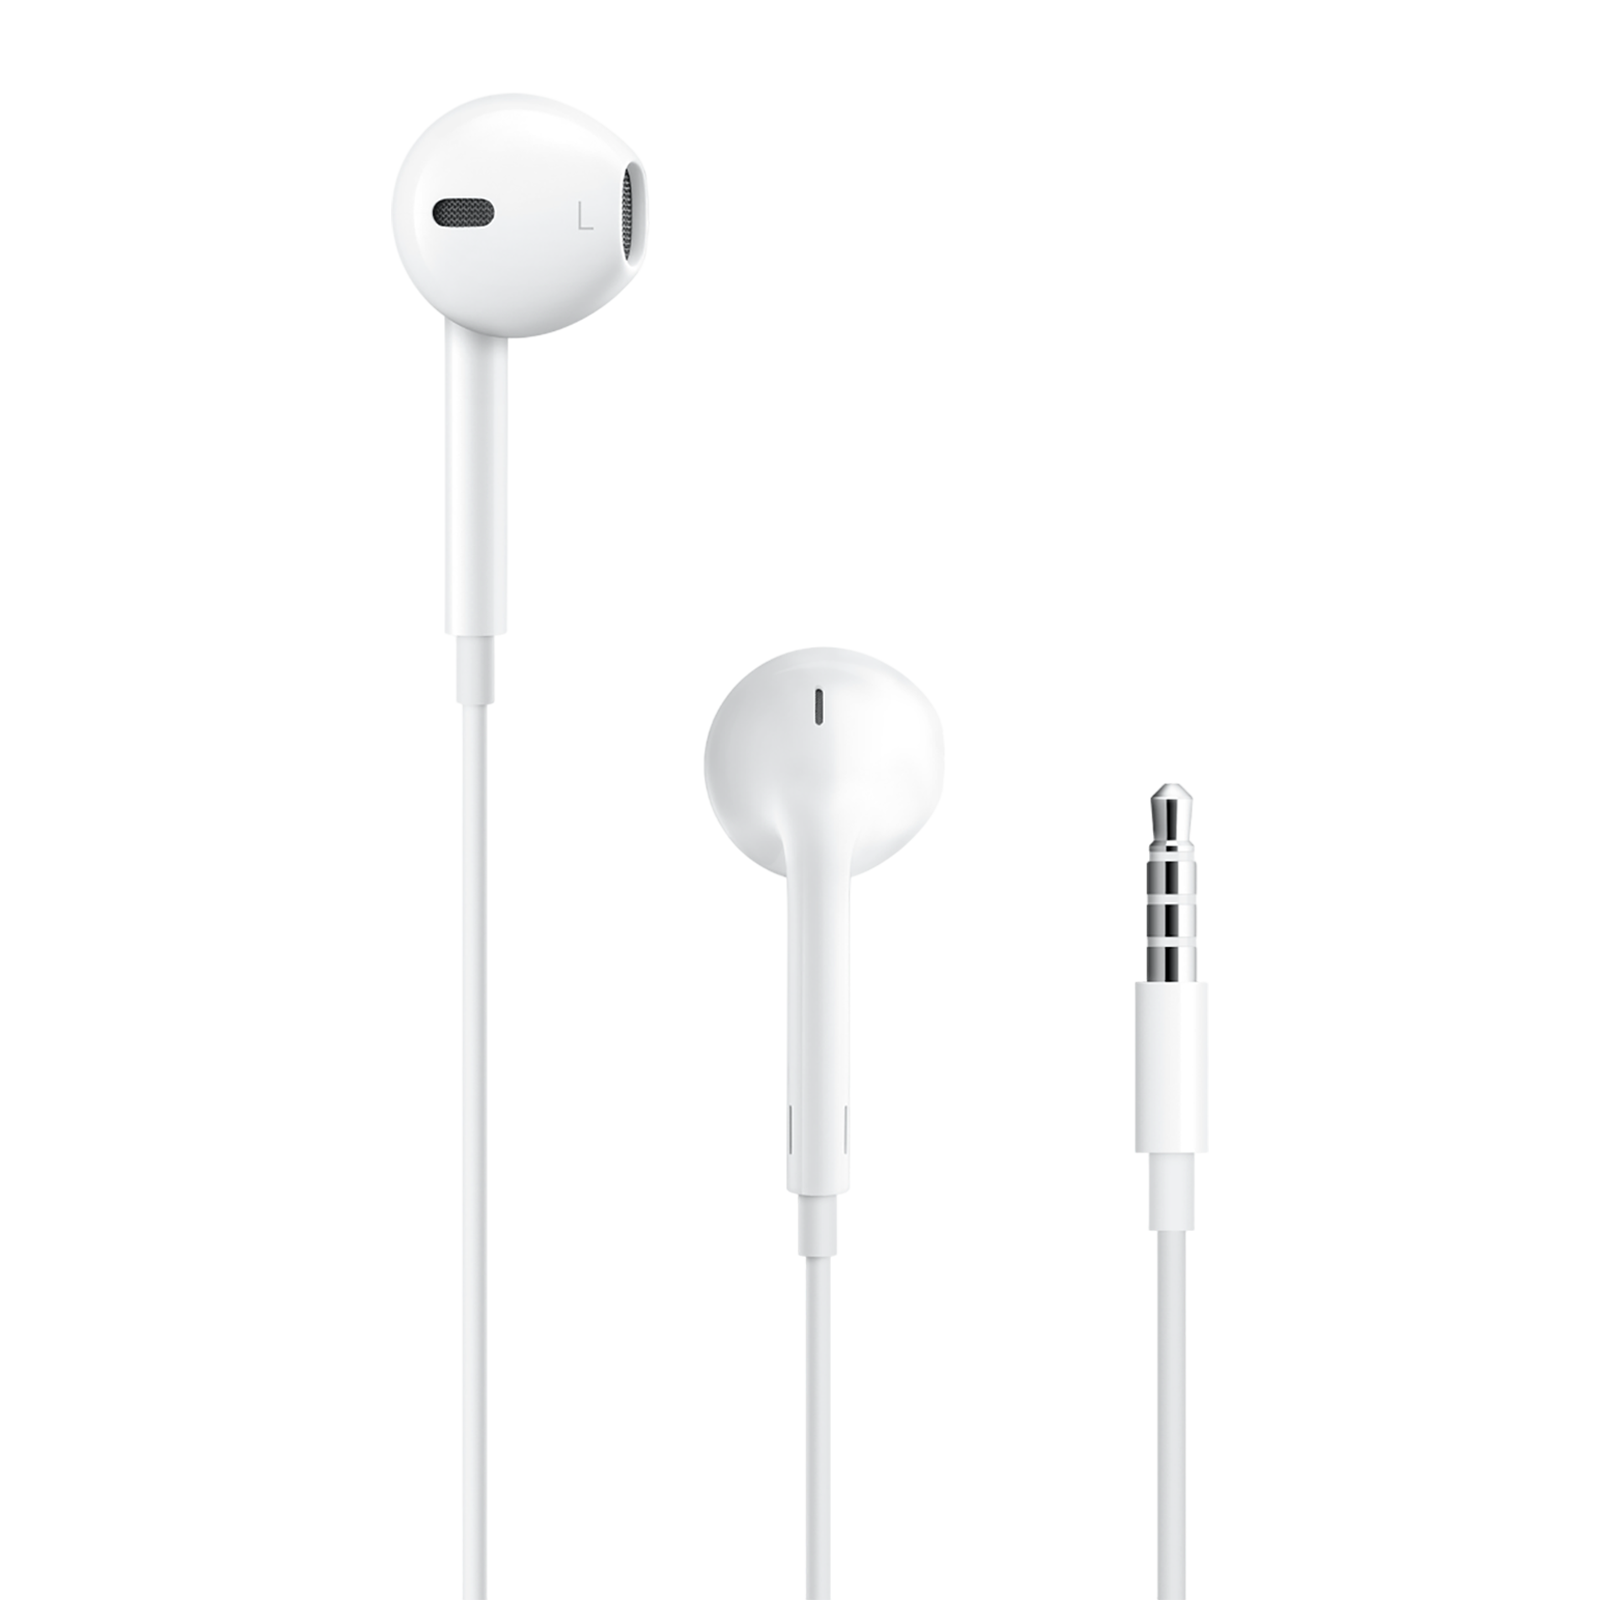 Apple EarPods Wired Earphone with Mic (In Ear, White)